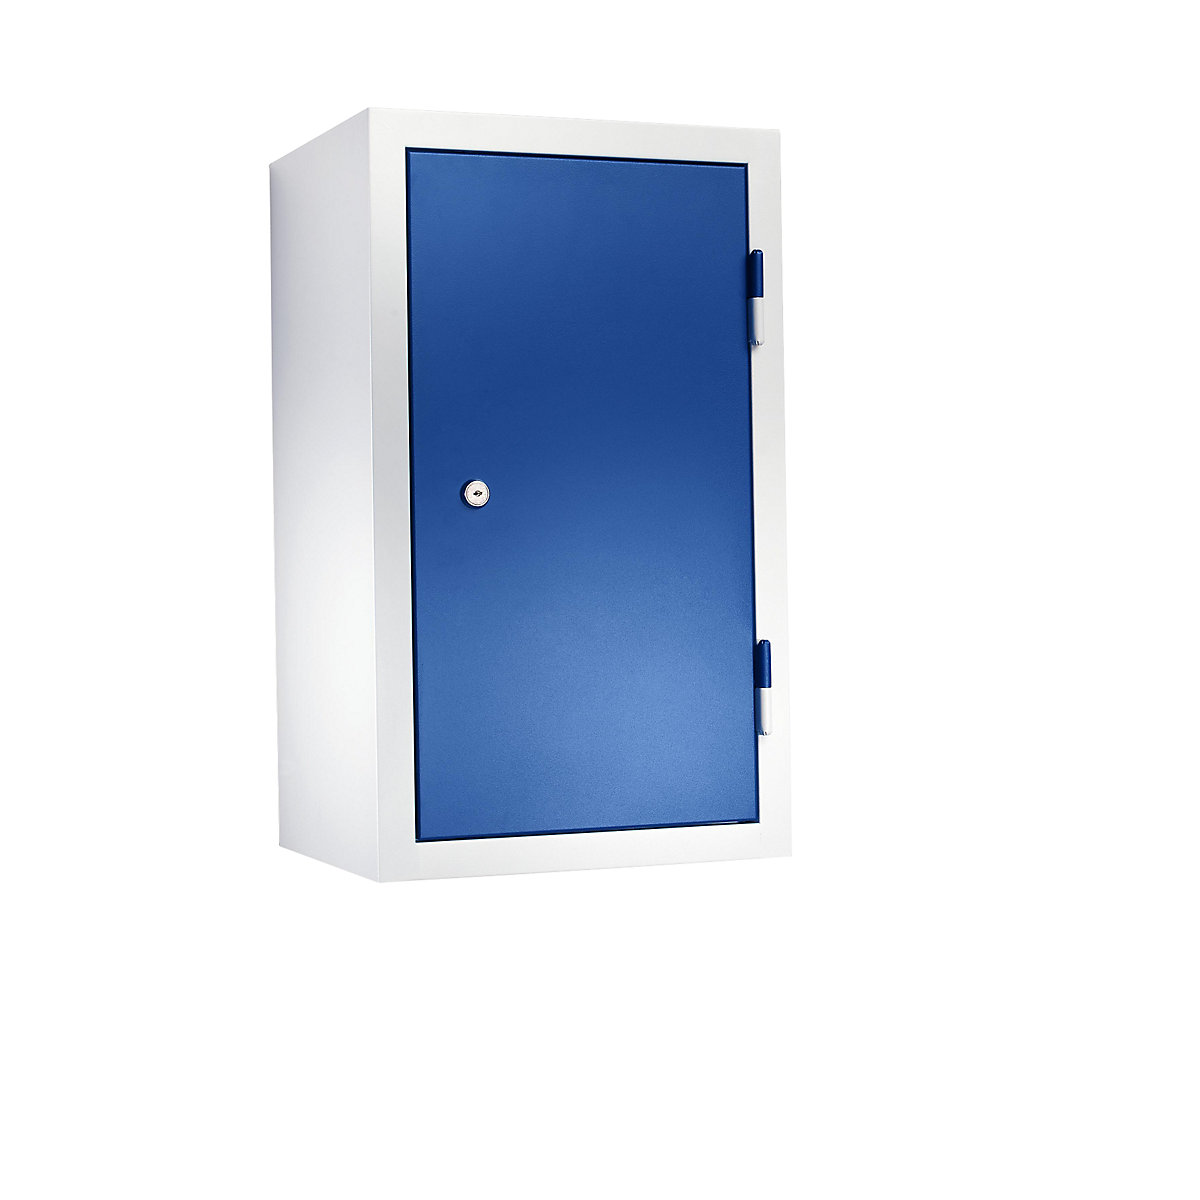 EUROKRAFTbasic – Armario colgante para taller, H x A x P 600 x 350 x 320 mm, puertas de chapa maciza, azul genciana RAL 5010